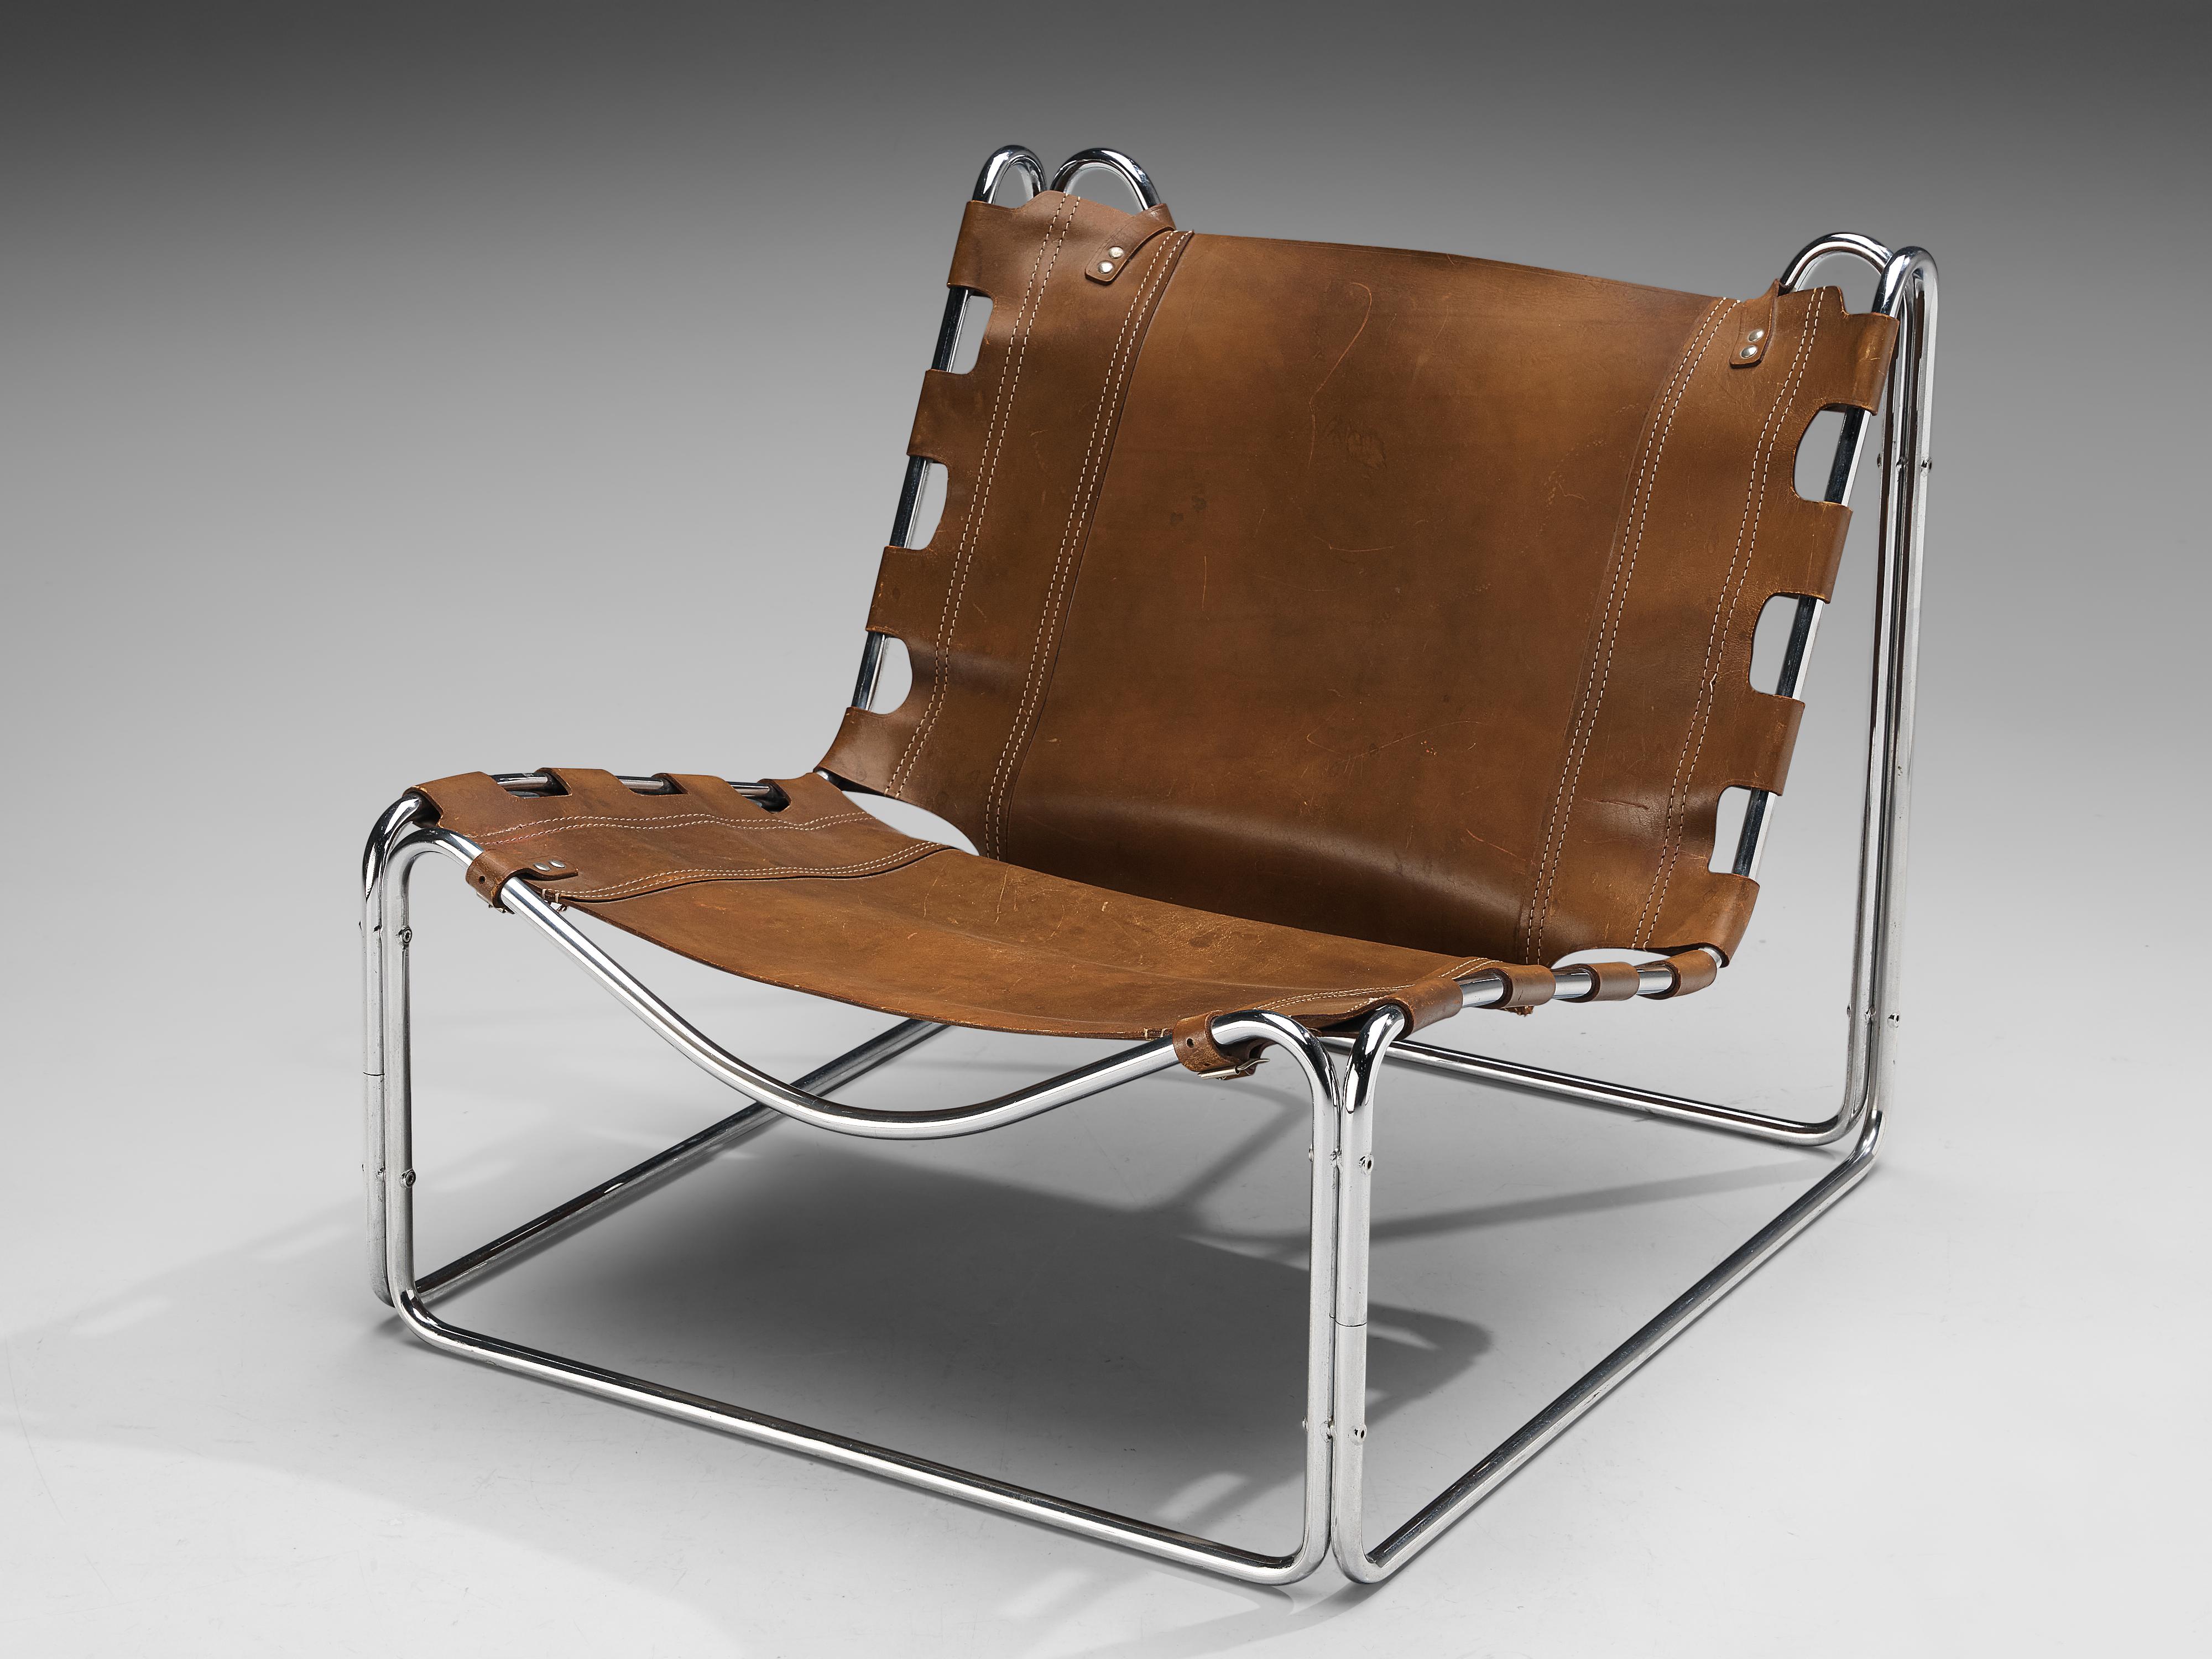 Pascal Mourgue pour Steiner, chaise longue modèle ' Fabio', cuir, acier, France, années 1960

Merveilleuse pièce de design de Pascal Mourgue datant des années 1960. Mourgue a créé une chaise longue confortable qui présente de multiples